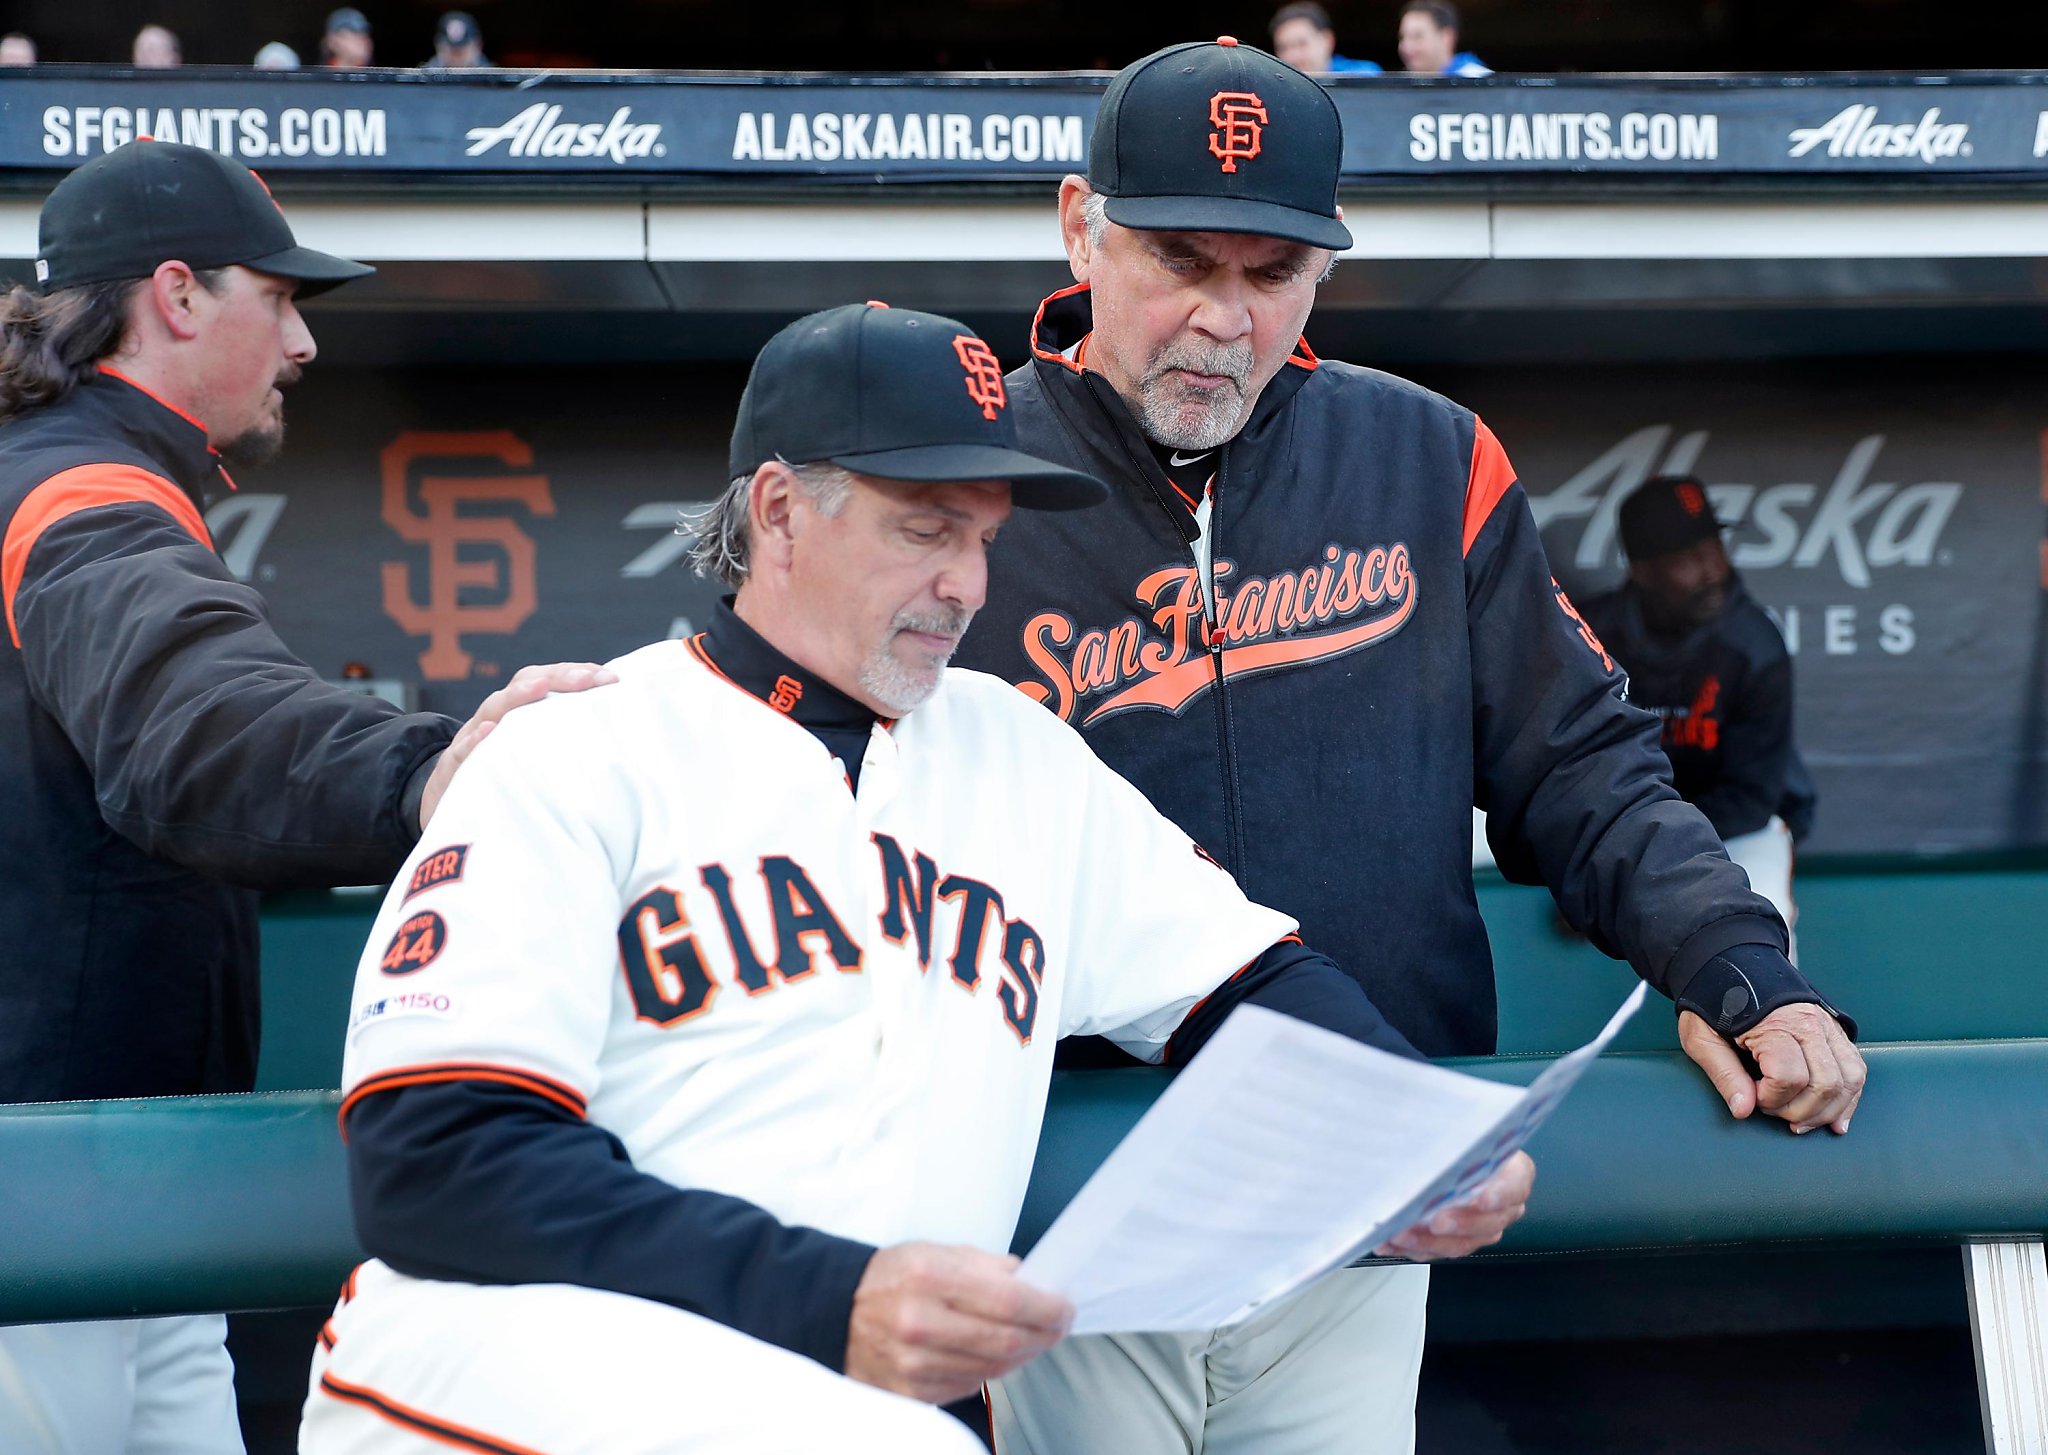 San Francisco Giants' Bench Coach Makes US Major League Baseball History